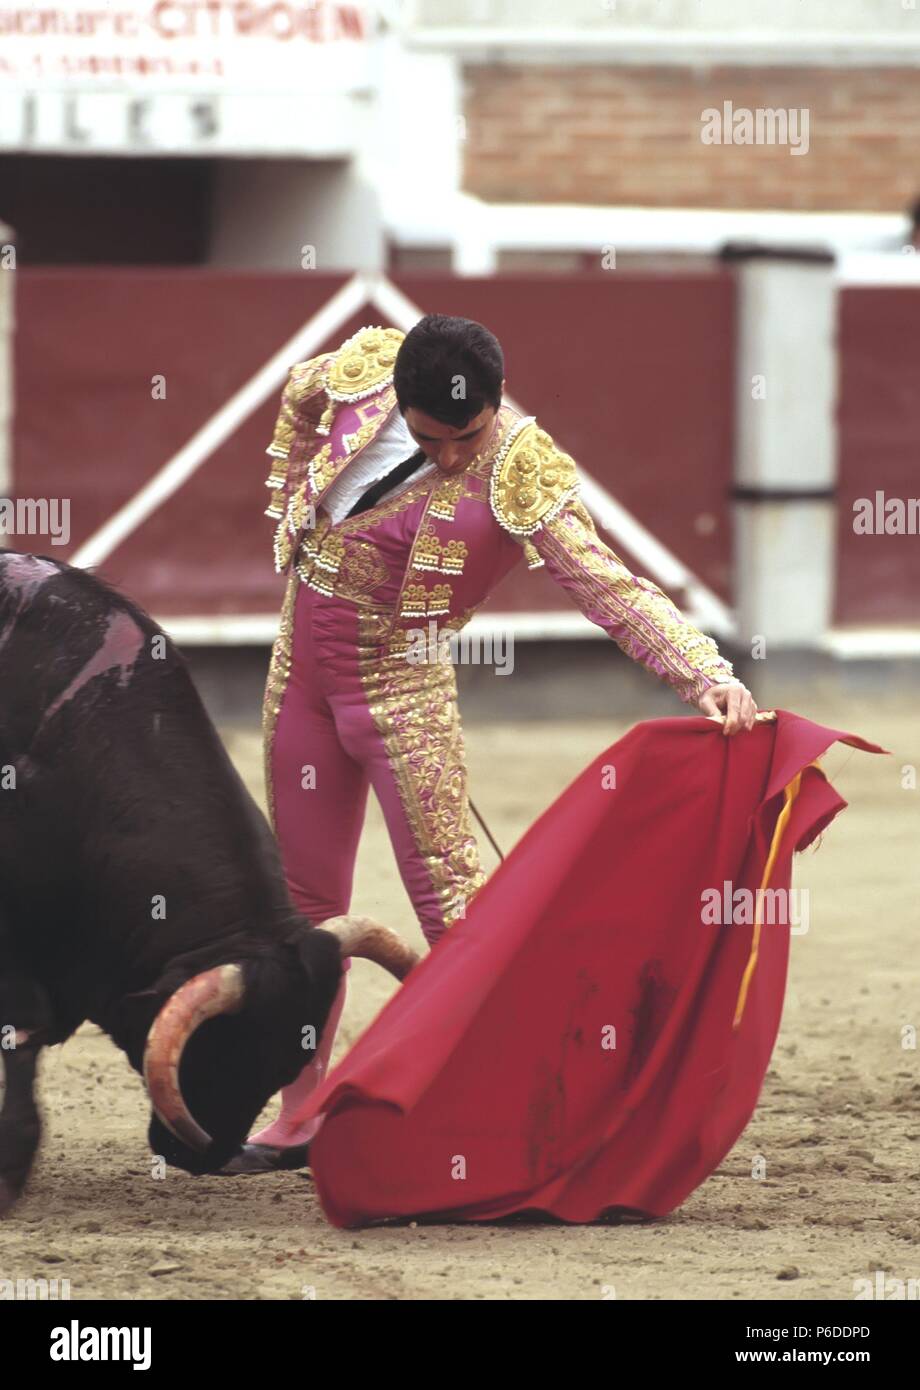 JOSE ORTEGA CANO. MATADOR DE TOROS ESPAÑOL. CARTAGENA 1953-. ACTUACION EN MADRID AÑO 1991. Stock Photo